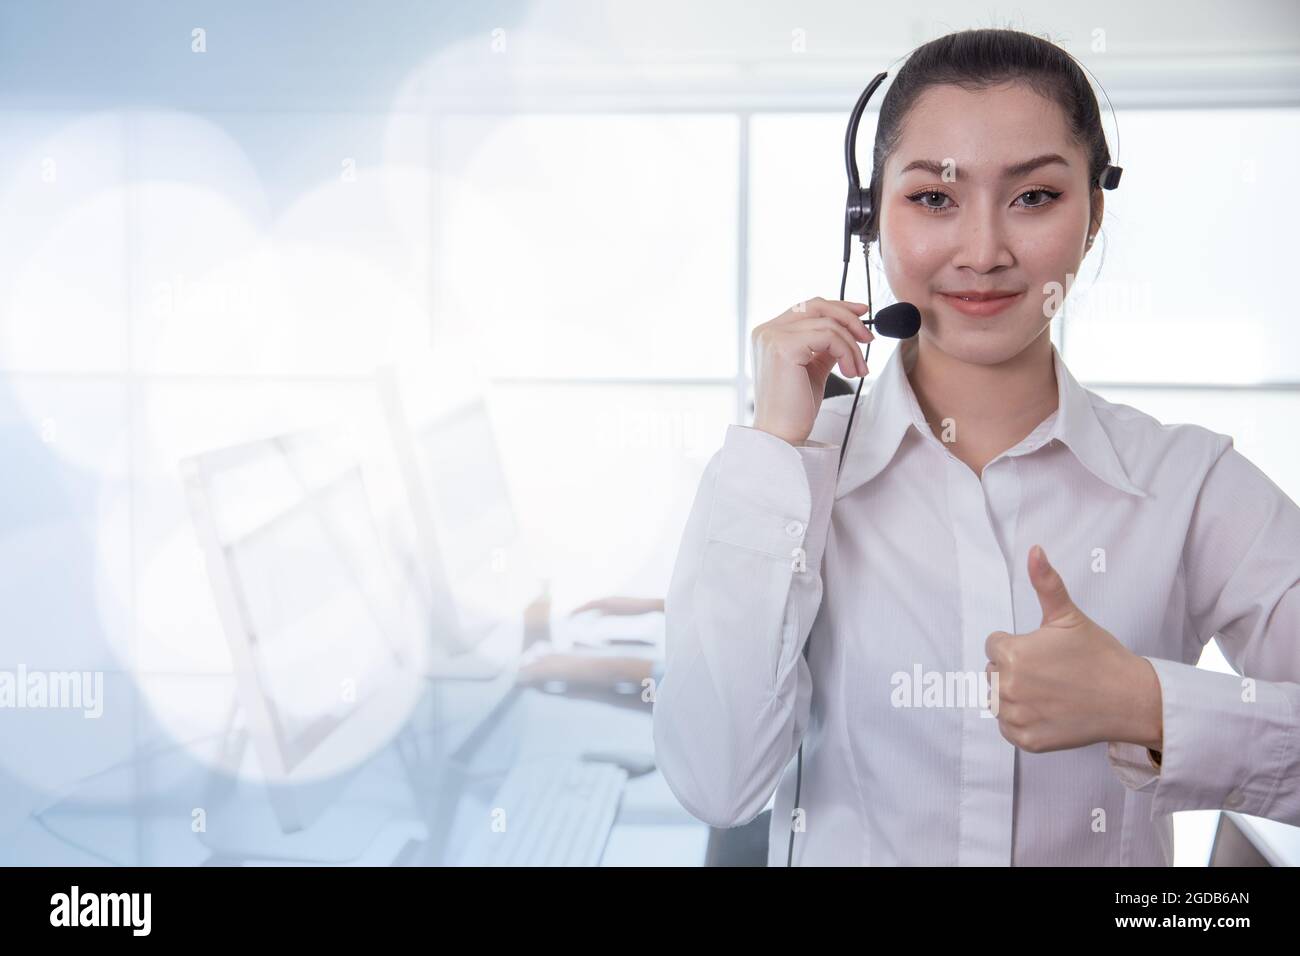 Der asiatische Callcenter-Mitarbeiter im Portrait-Stil Daumen nach oben. Helpdesk-Support Telefonanruf Kundendienst weibliches Personal lächelt mit Headset gutes Servicekonzept mit sp Stockfoto